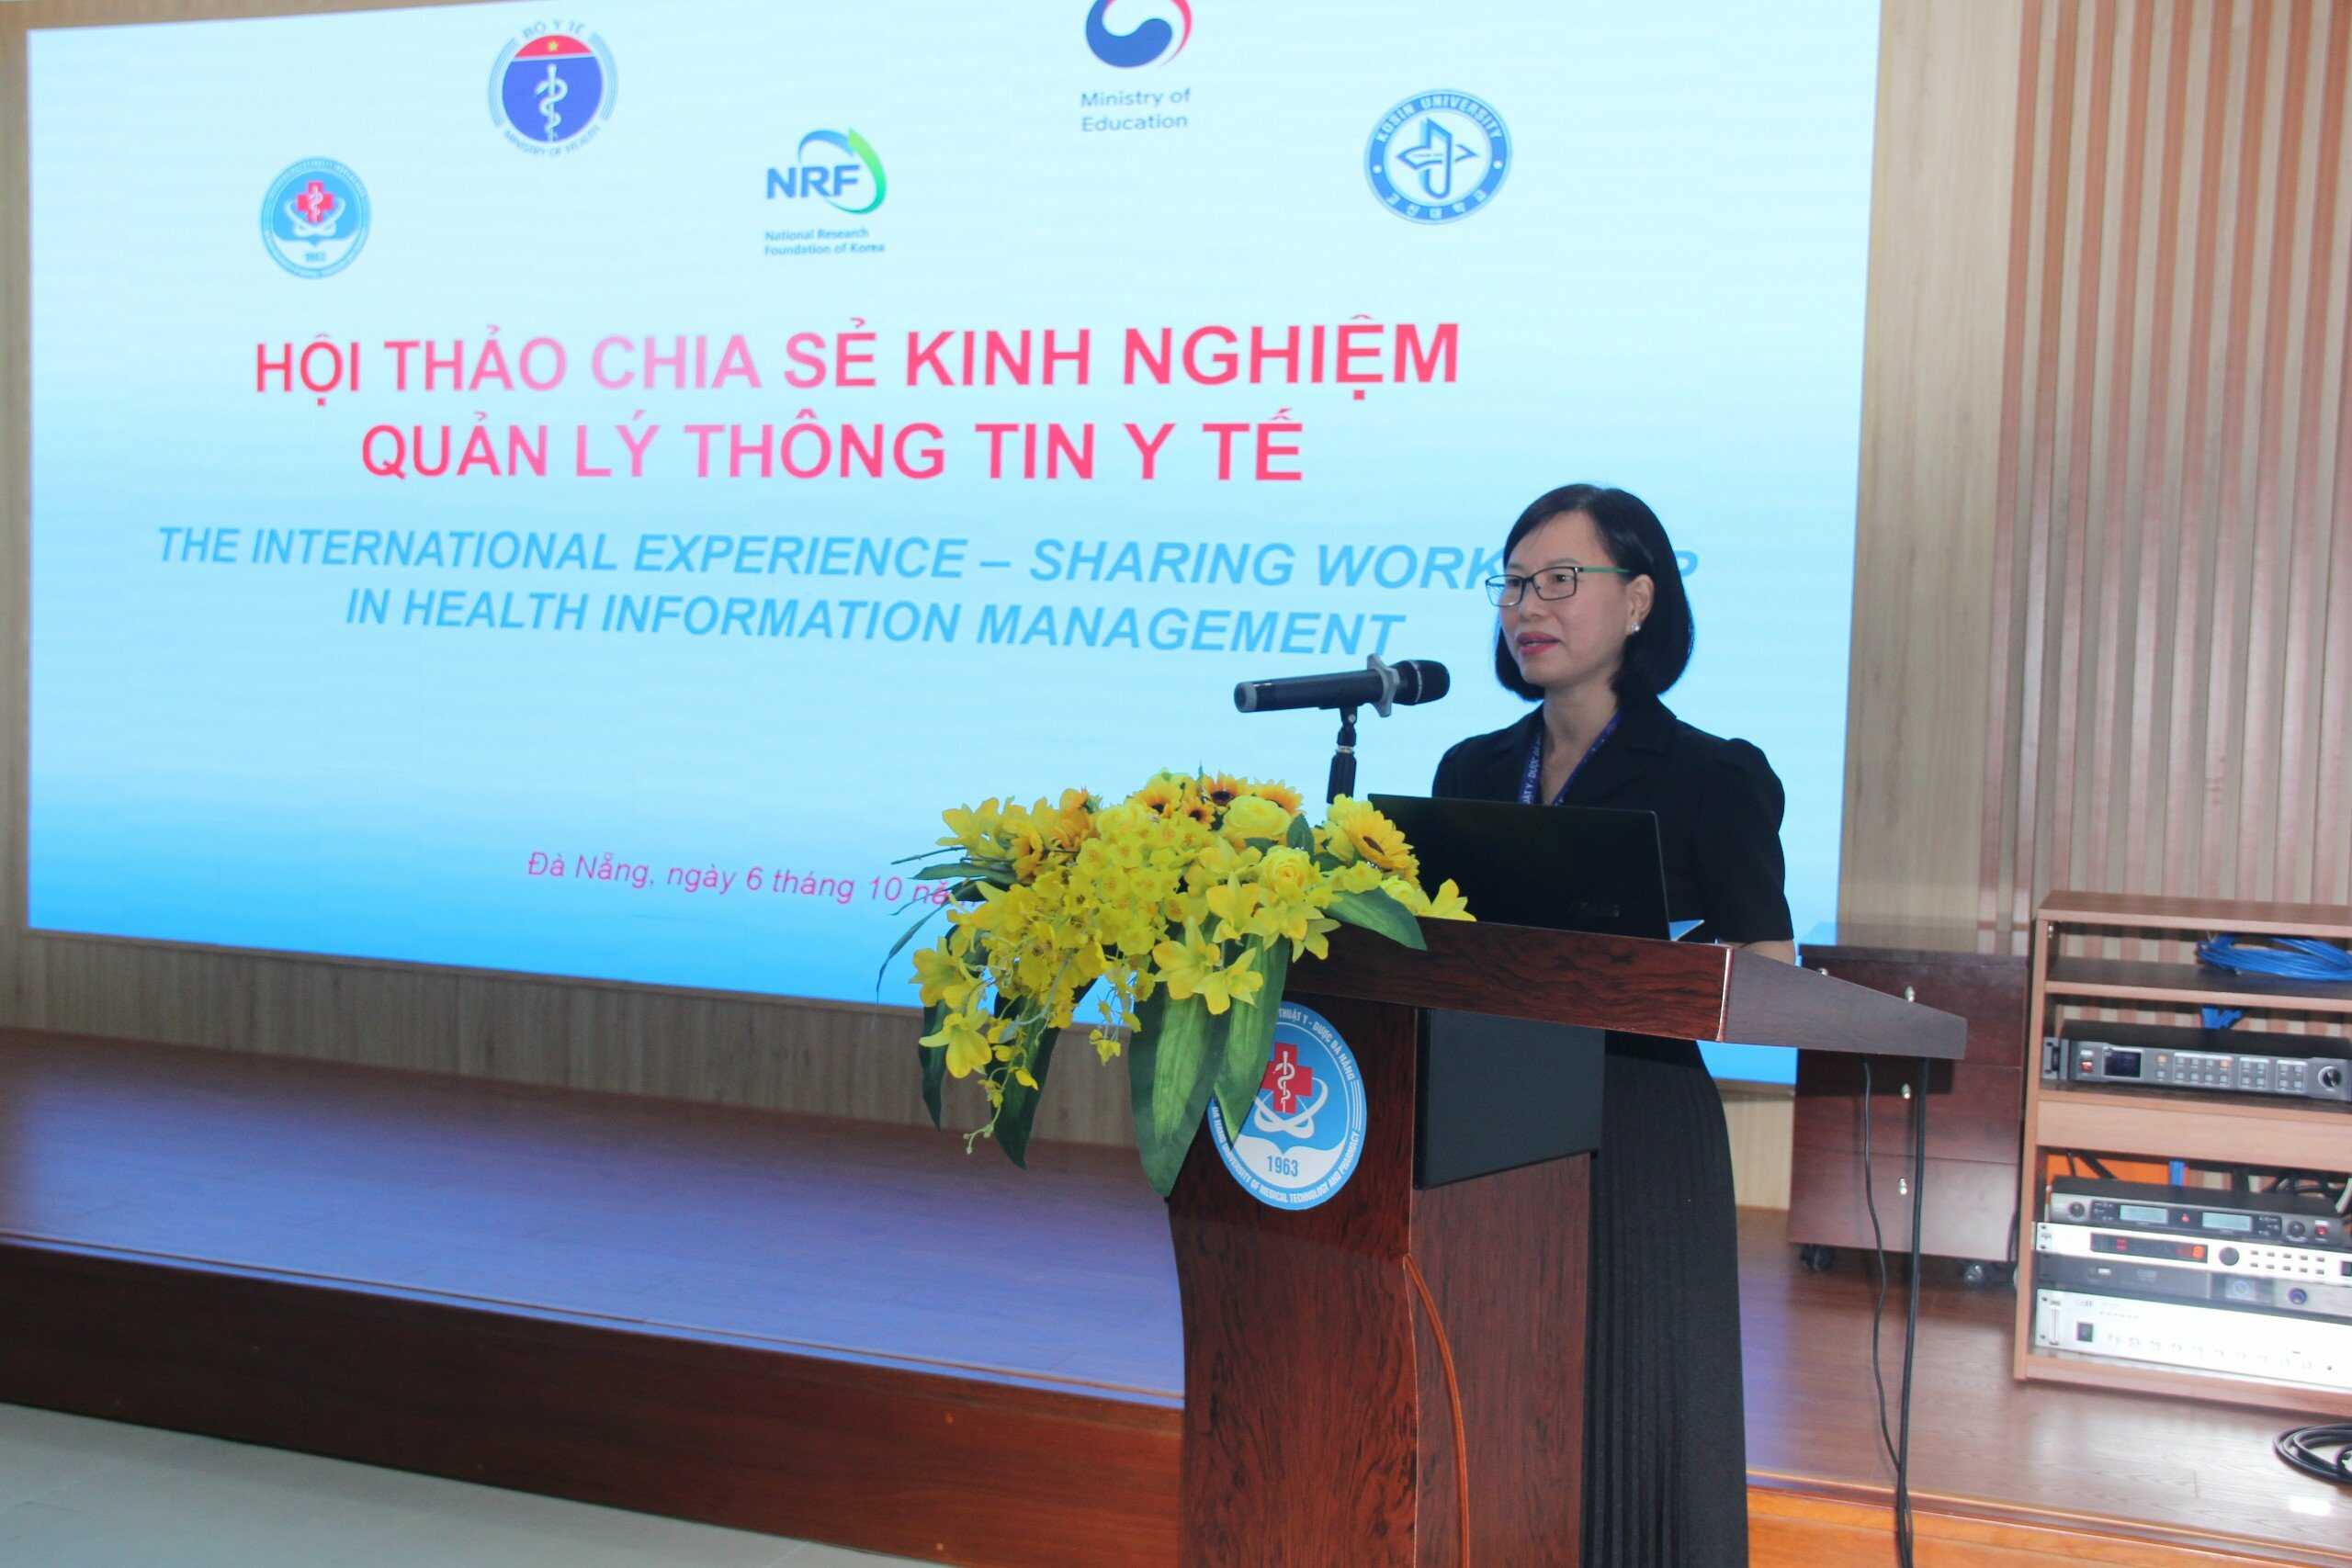 Trường Đại học Kỹ thuật Y - Dược Đà Nẵng phối hợp cùng trường Đại học Kosin - Hàn Quốc tổ chức Hội thảo quốc tế nhằm chia sẻ kinh nghiệm quản lý thông tin y tế tại Việt Nam 